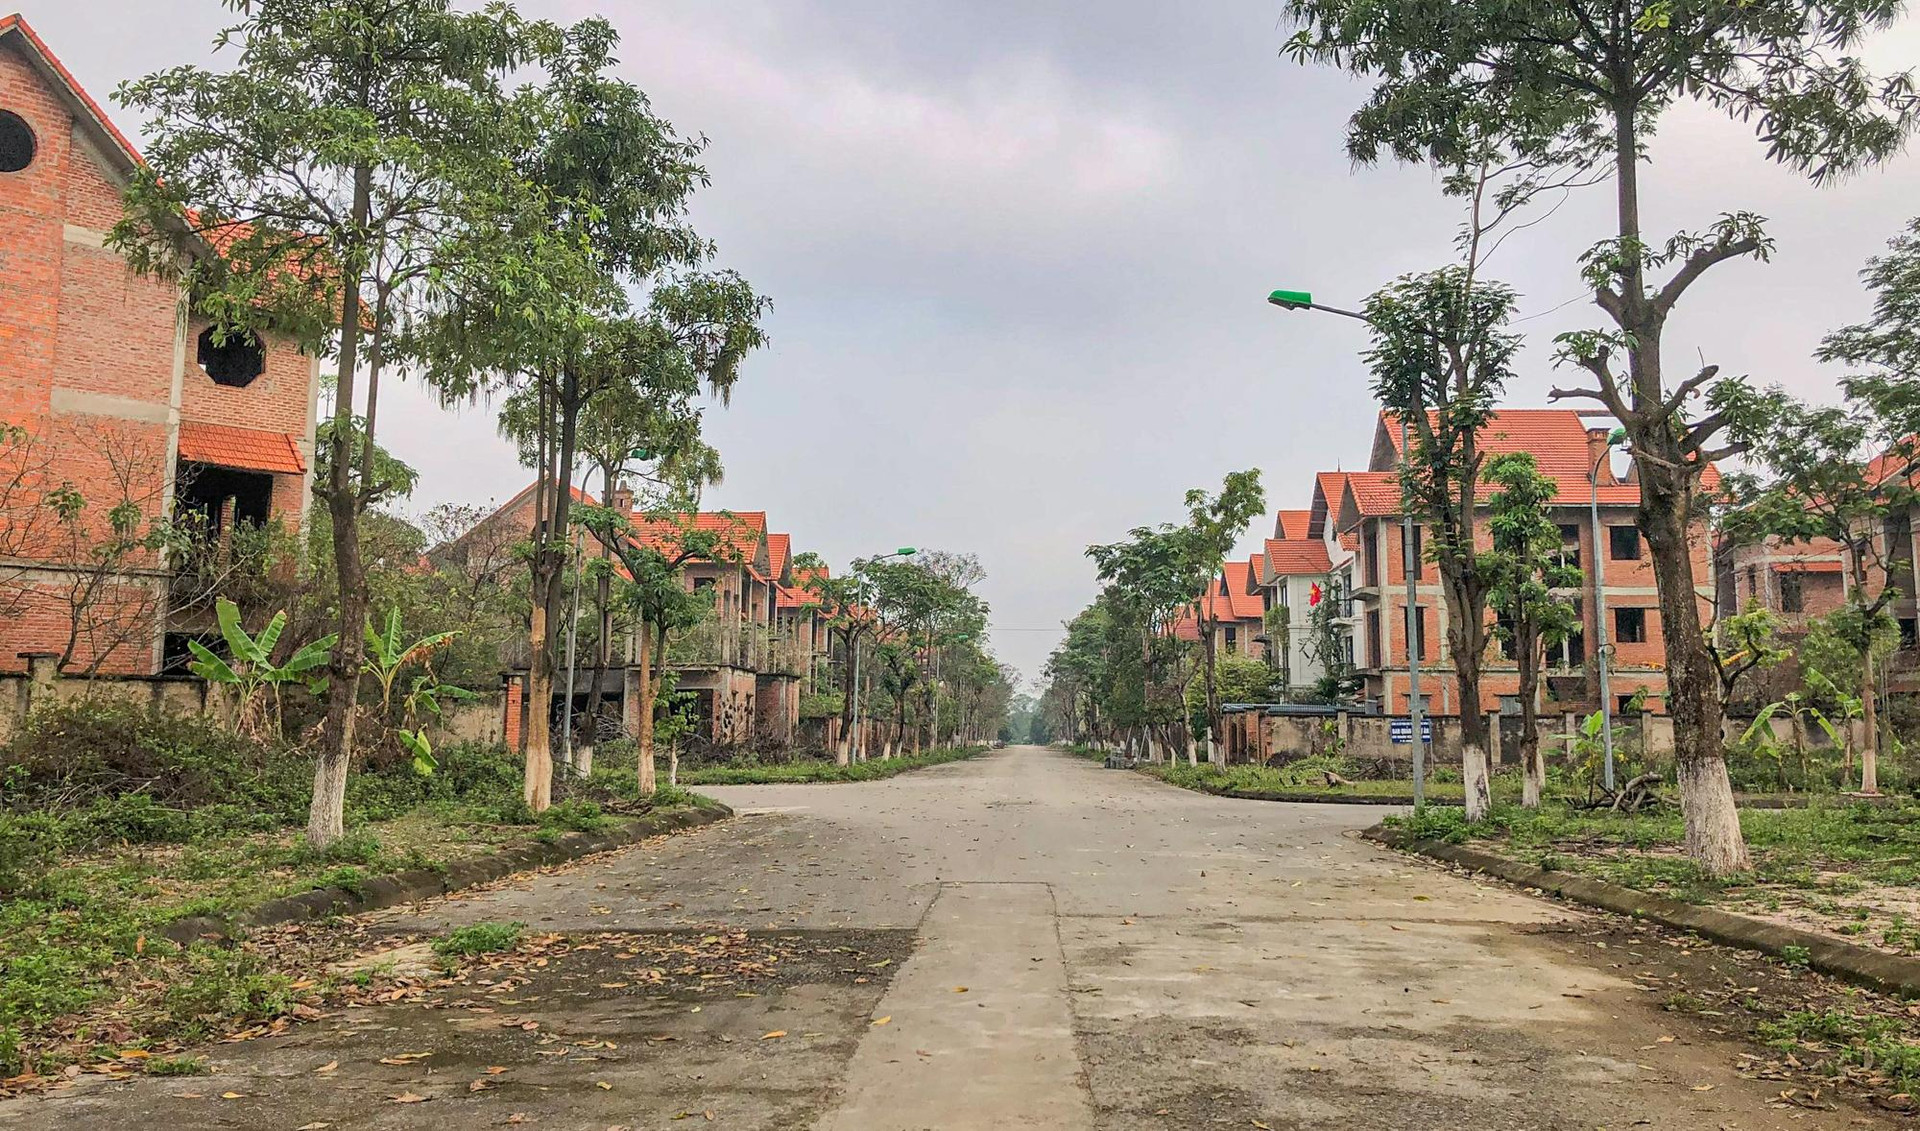 [Photo Essay] Sắp lên thành phố phía Bắc Hà Nội, làng biệt thự Mê Linh - nơi chôn vùi hàng nghìn tỷ đồng của nhà đầu tư hiện nay ra sao? - Ảnh 2.